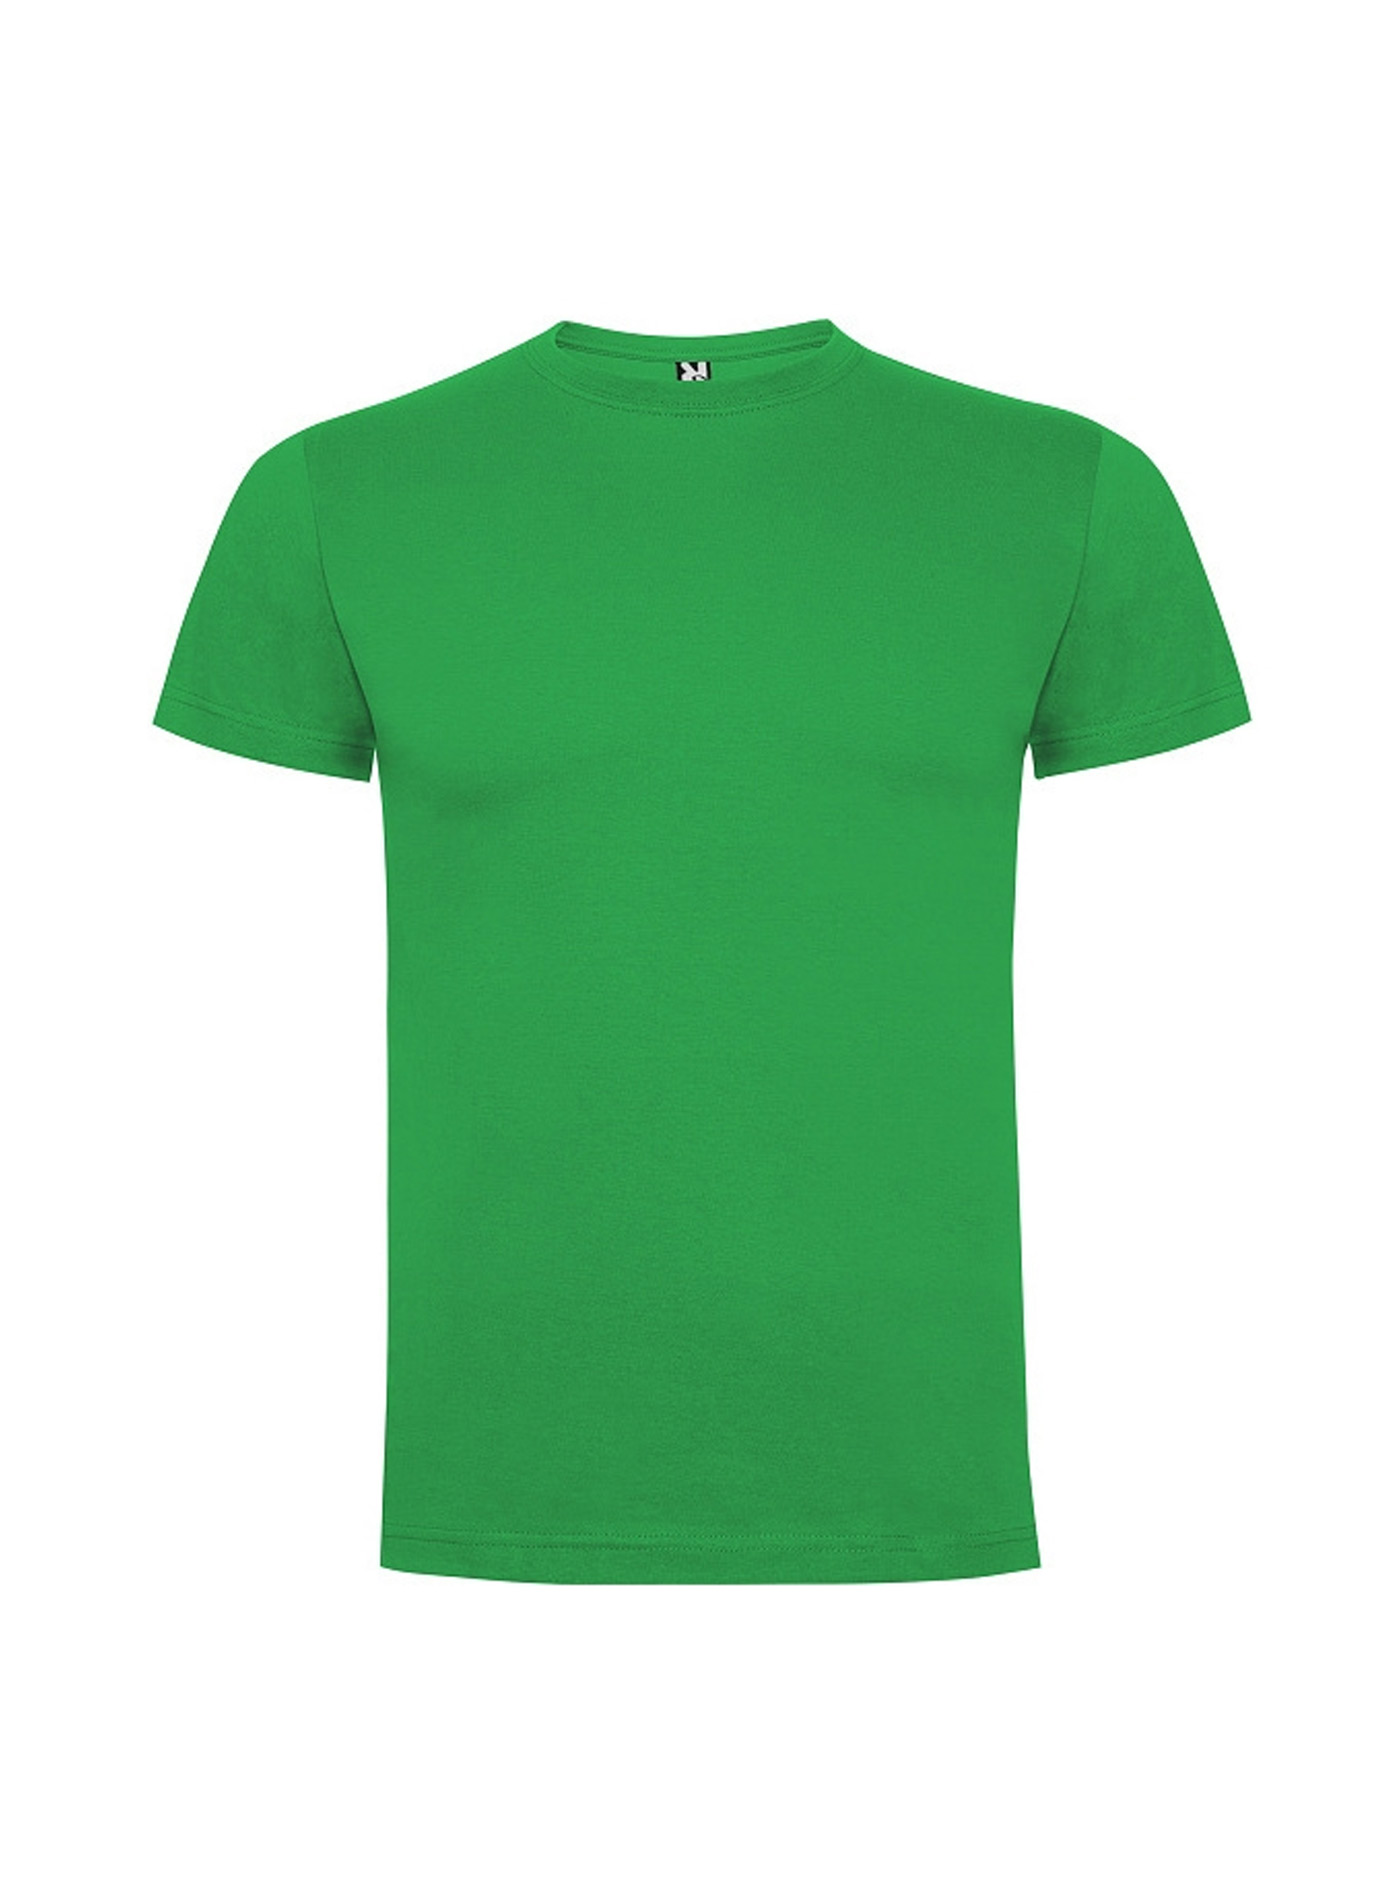 Dětské tričko Roly Dogo premium - Irská zelená 7-8